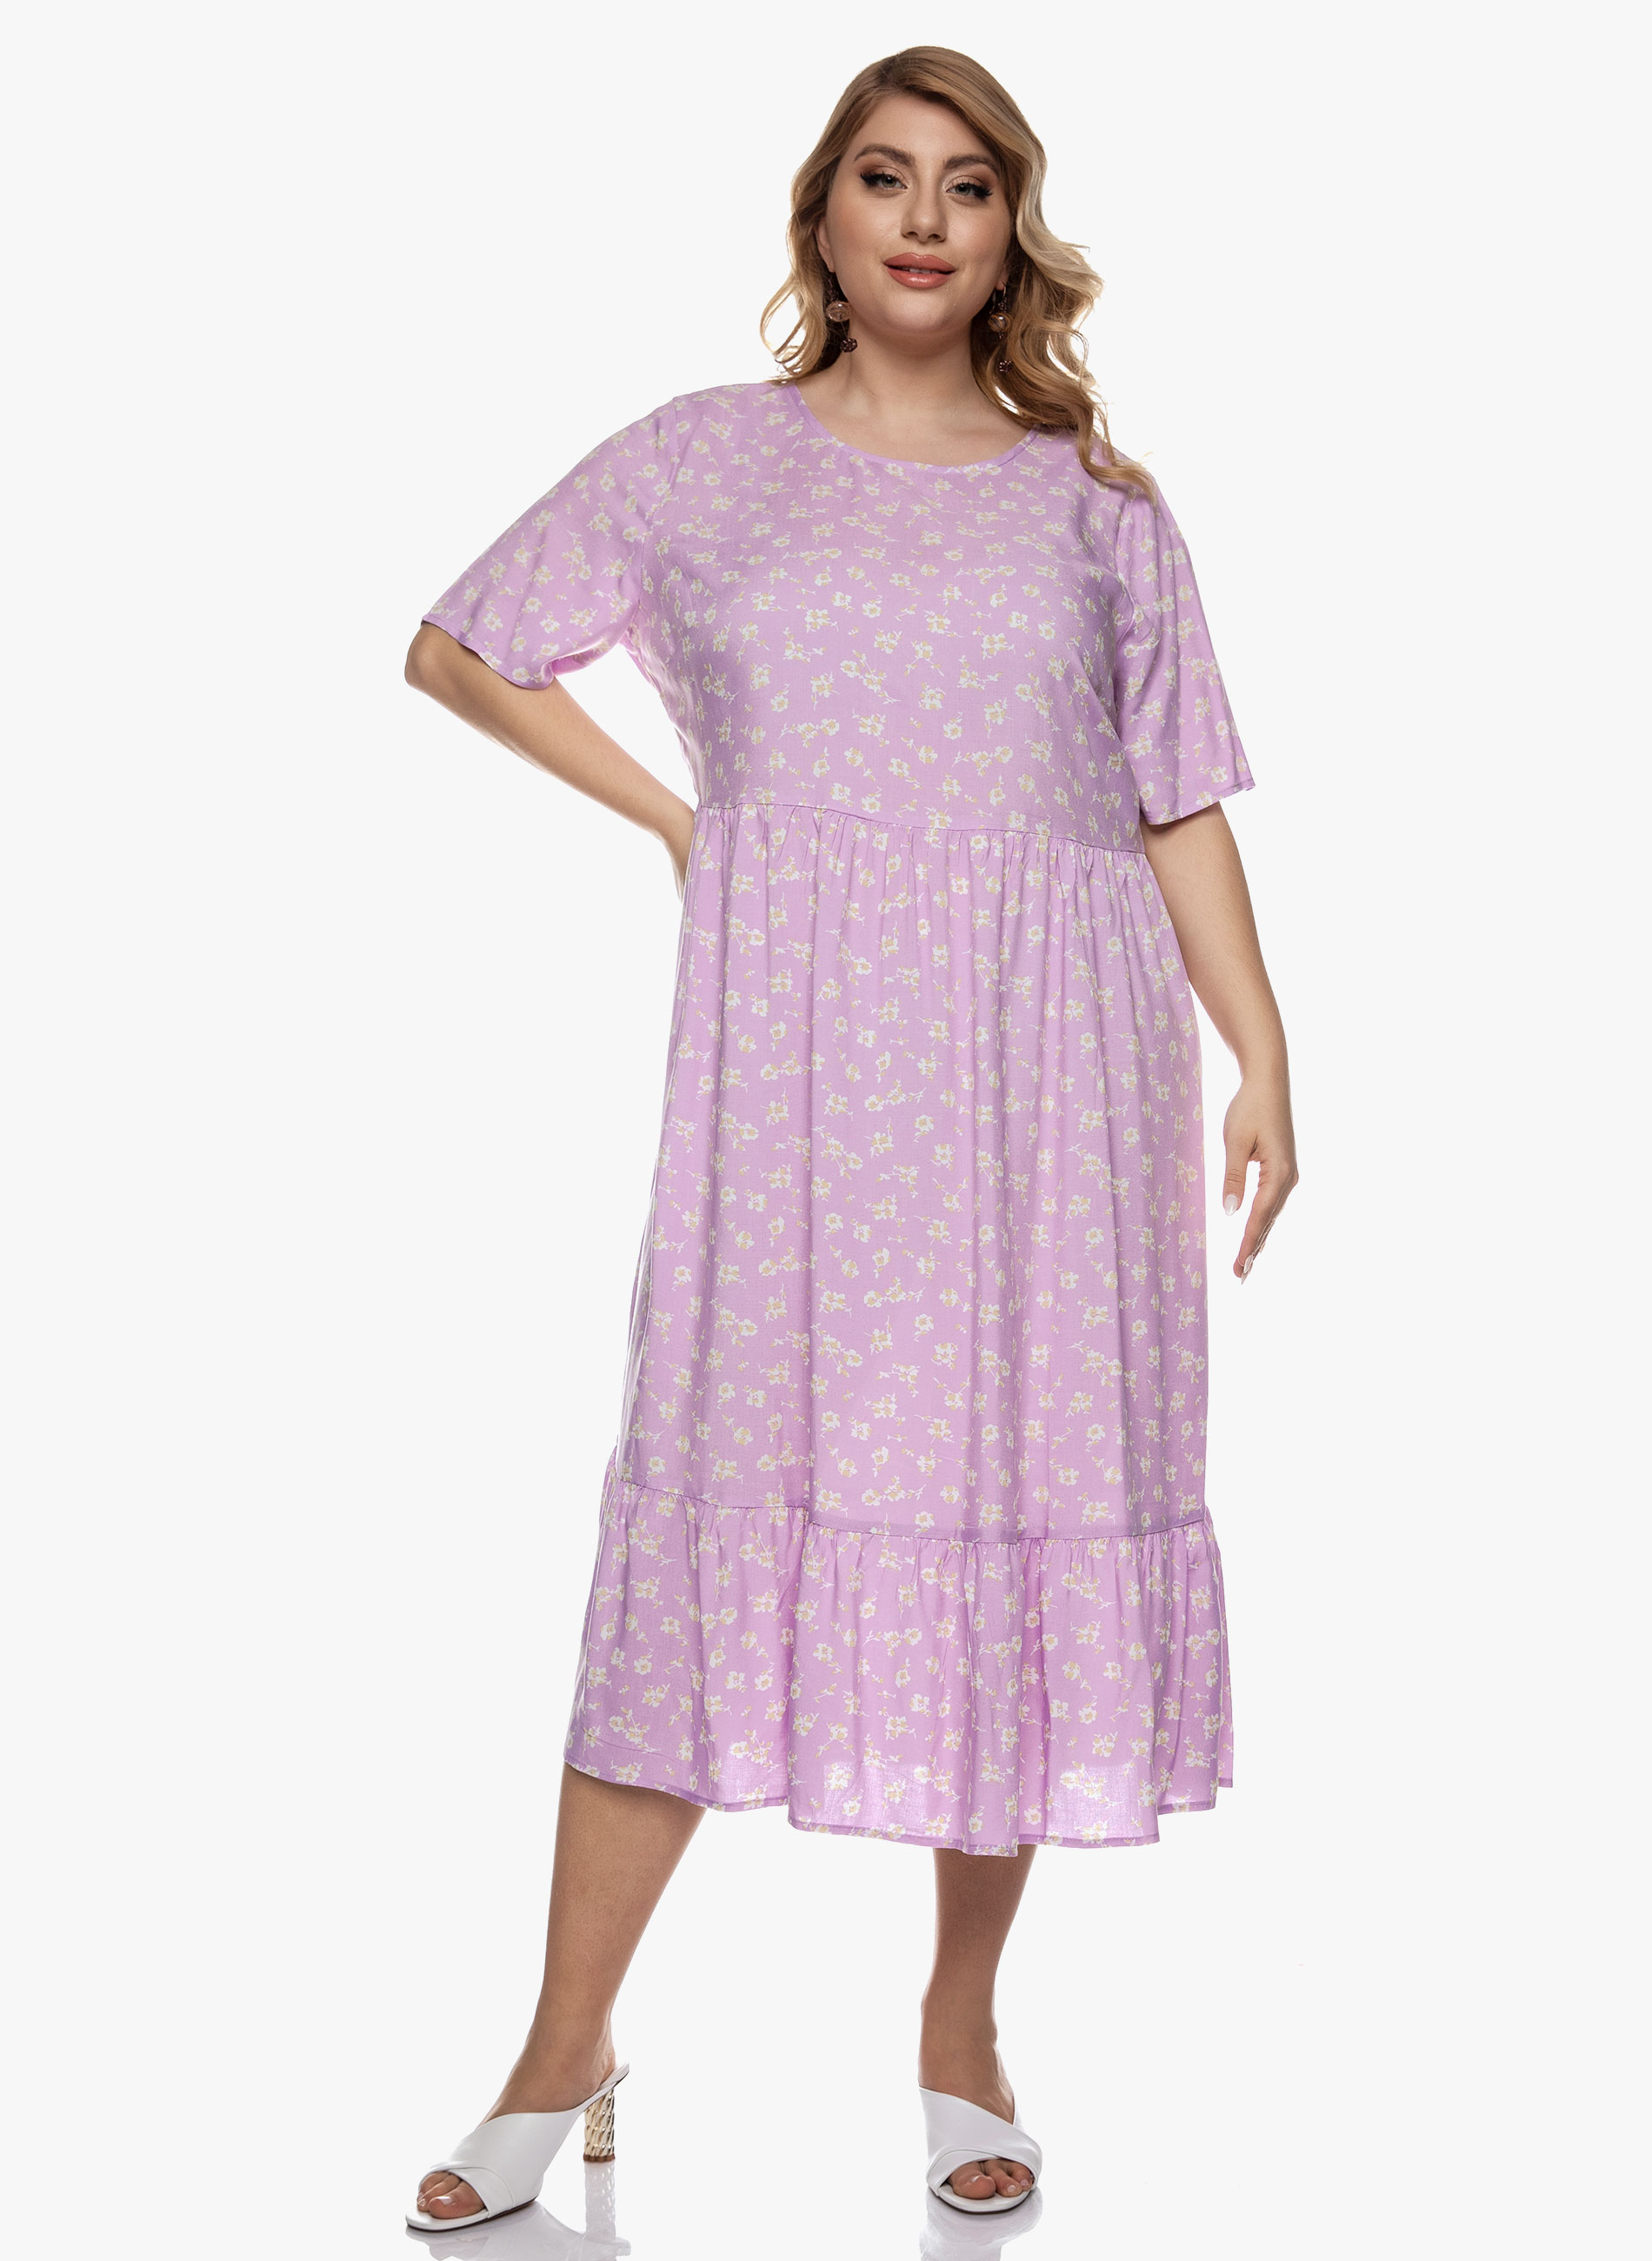 Φόρεμα Βισκόζης Ροζ Φλοράλ ΜΕΓΑΛΑ ΜΕΓΕΘΗ ΦΟΡΕΜΑΤΑ > CASUAL